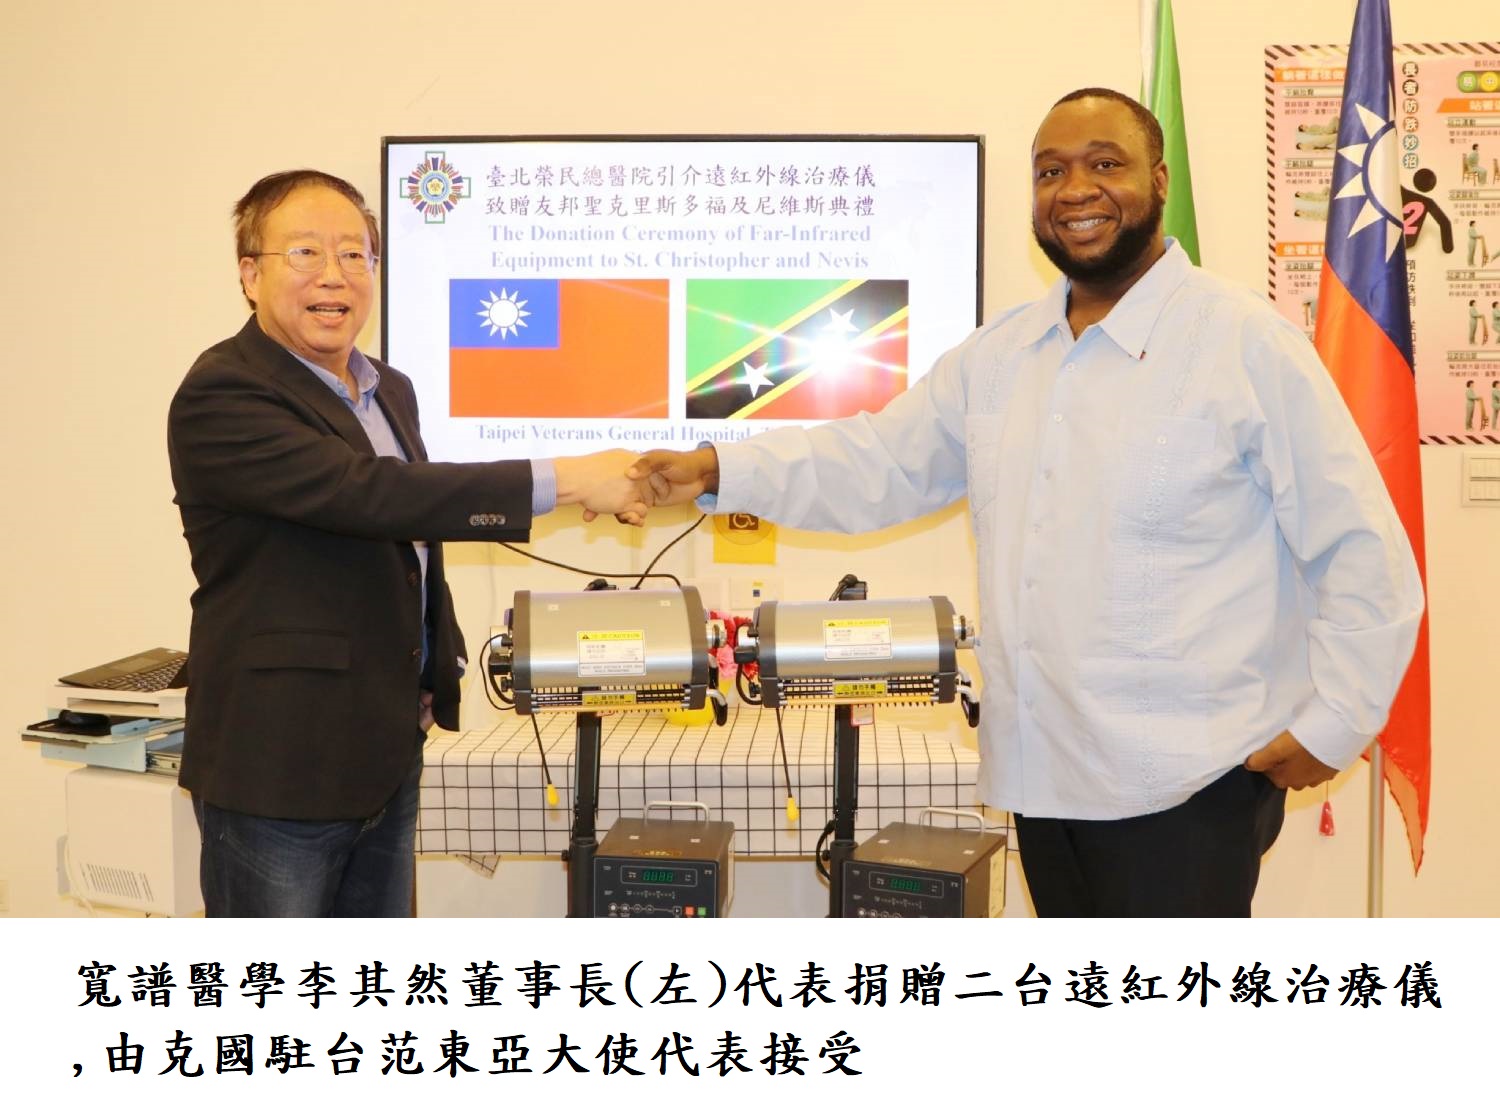 寬譜醫學李其然董事長(左)代表捐贈二台遠紅外線治療儀,由克國駐台范東亞大使代表接受